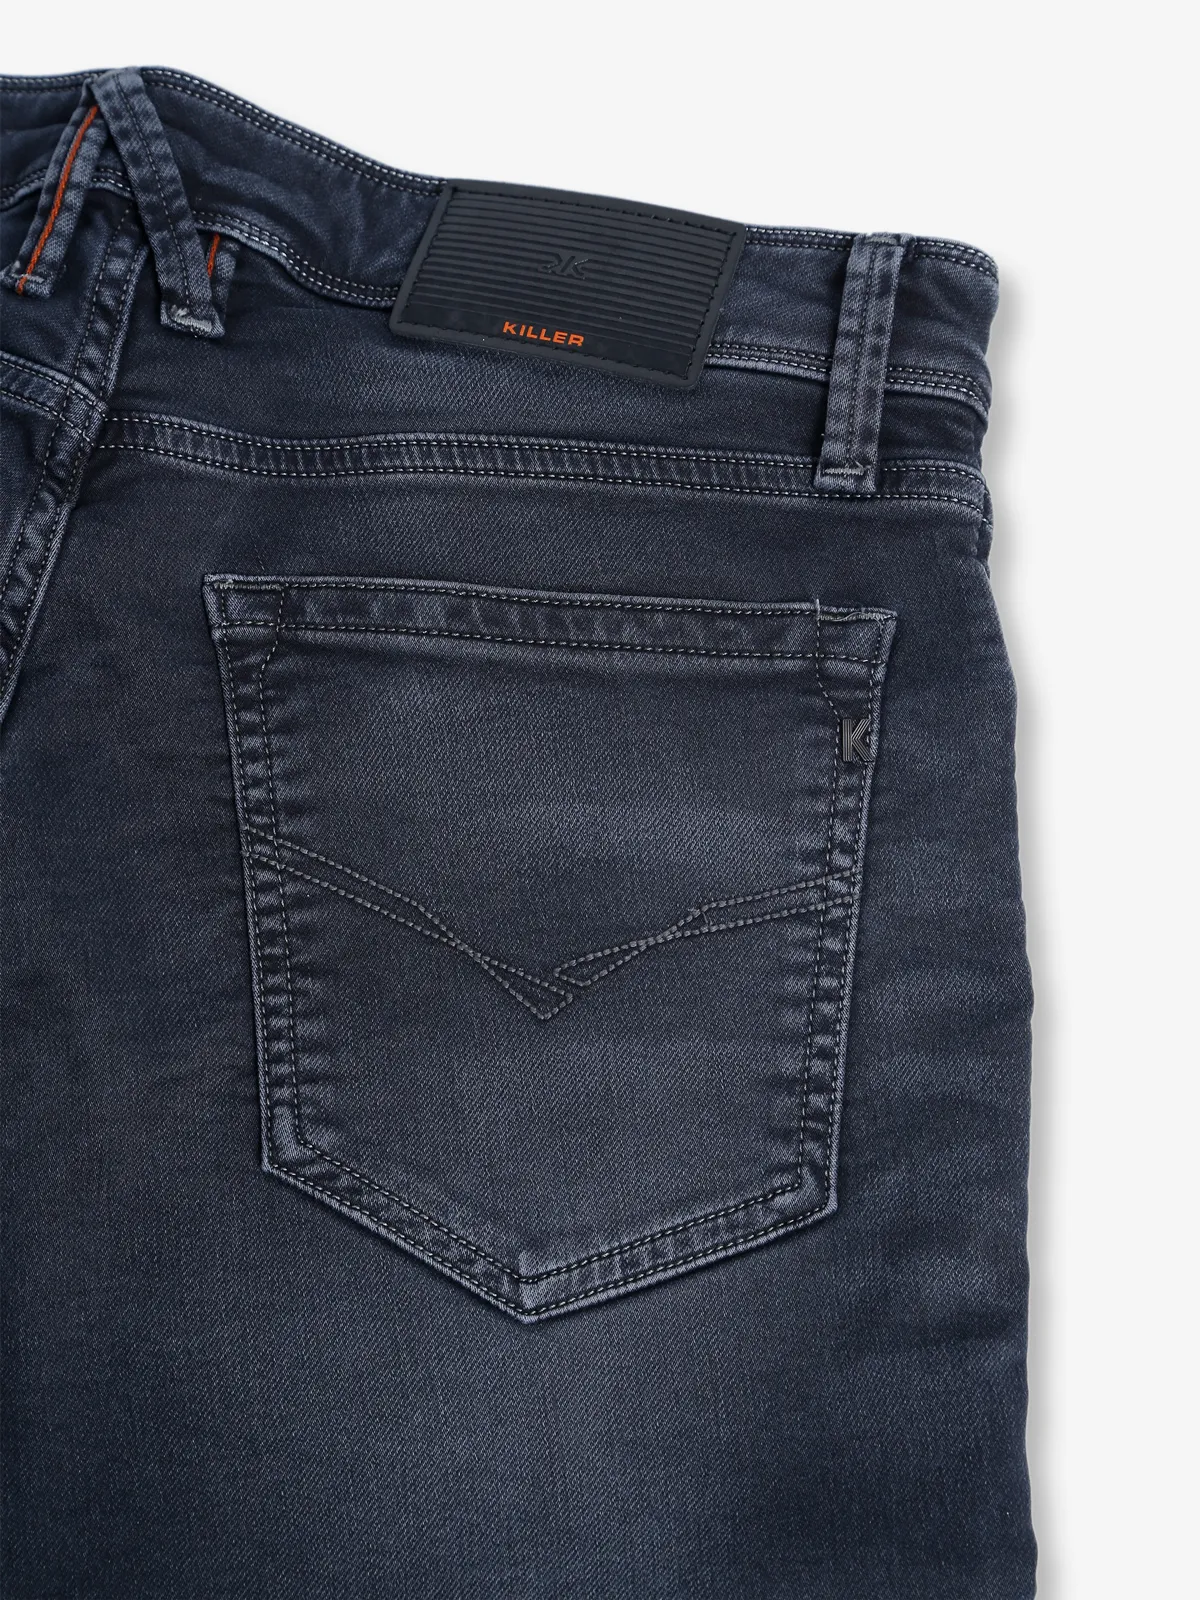 Killer dark grey washed slim fit jeans